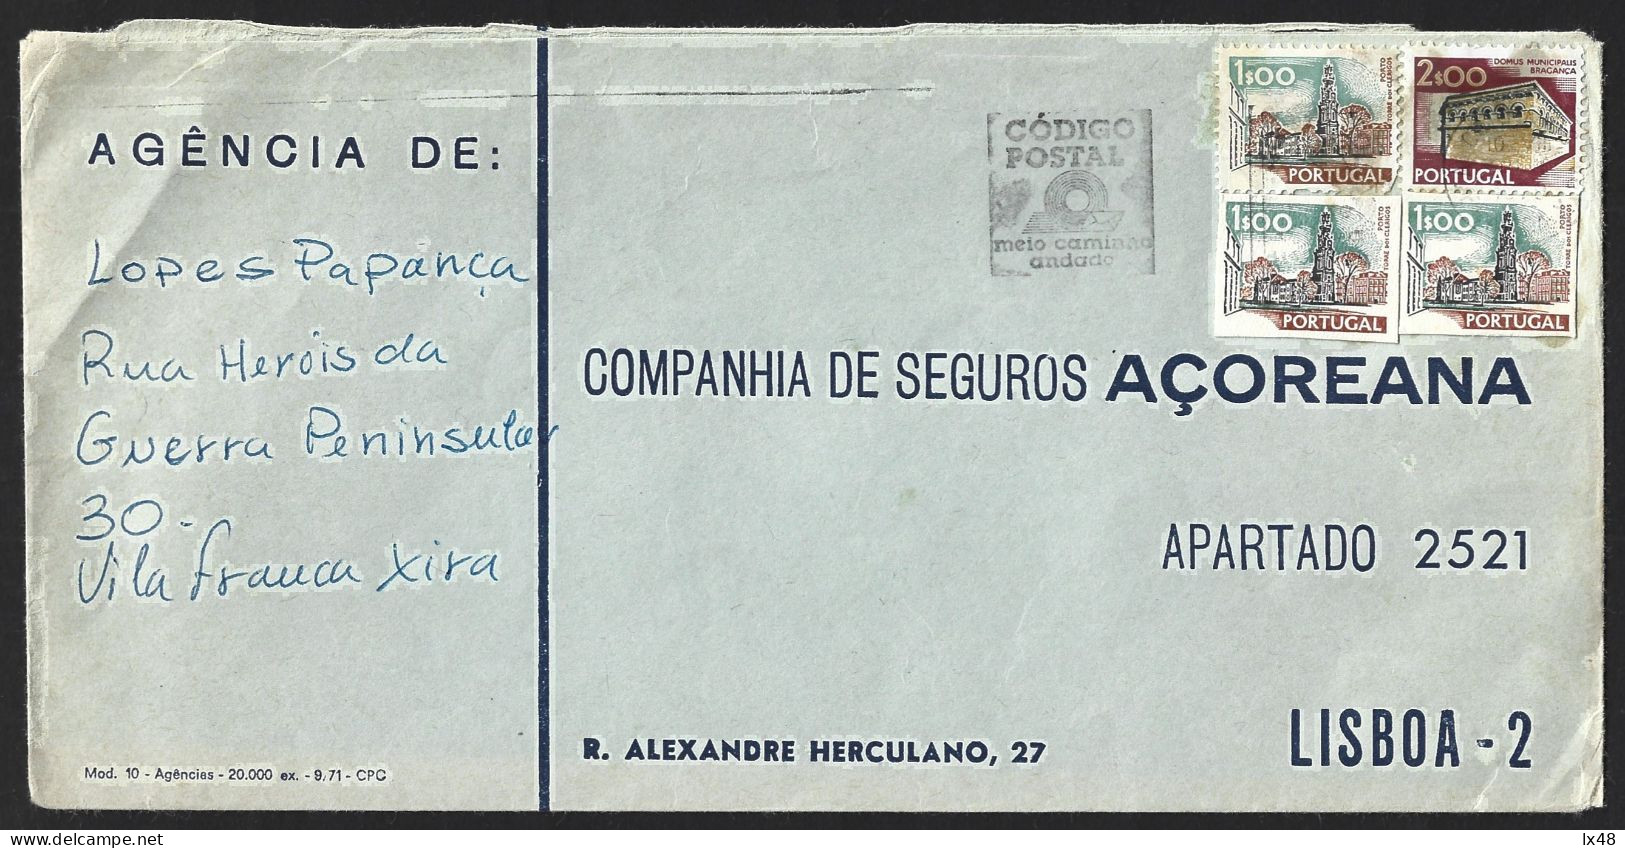 Carta Com Stamps Recortados Inteiros Postais 'Torre Dos Clérigos' E Utilizados Correio Regular. Raro.stamps Cut From Ent - Covers & Documents